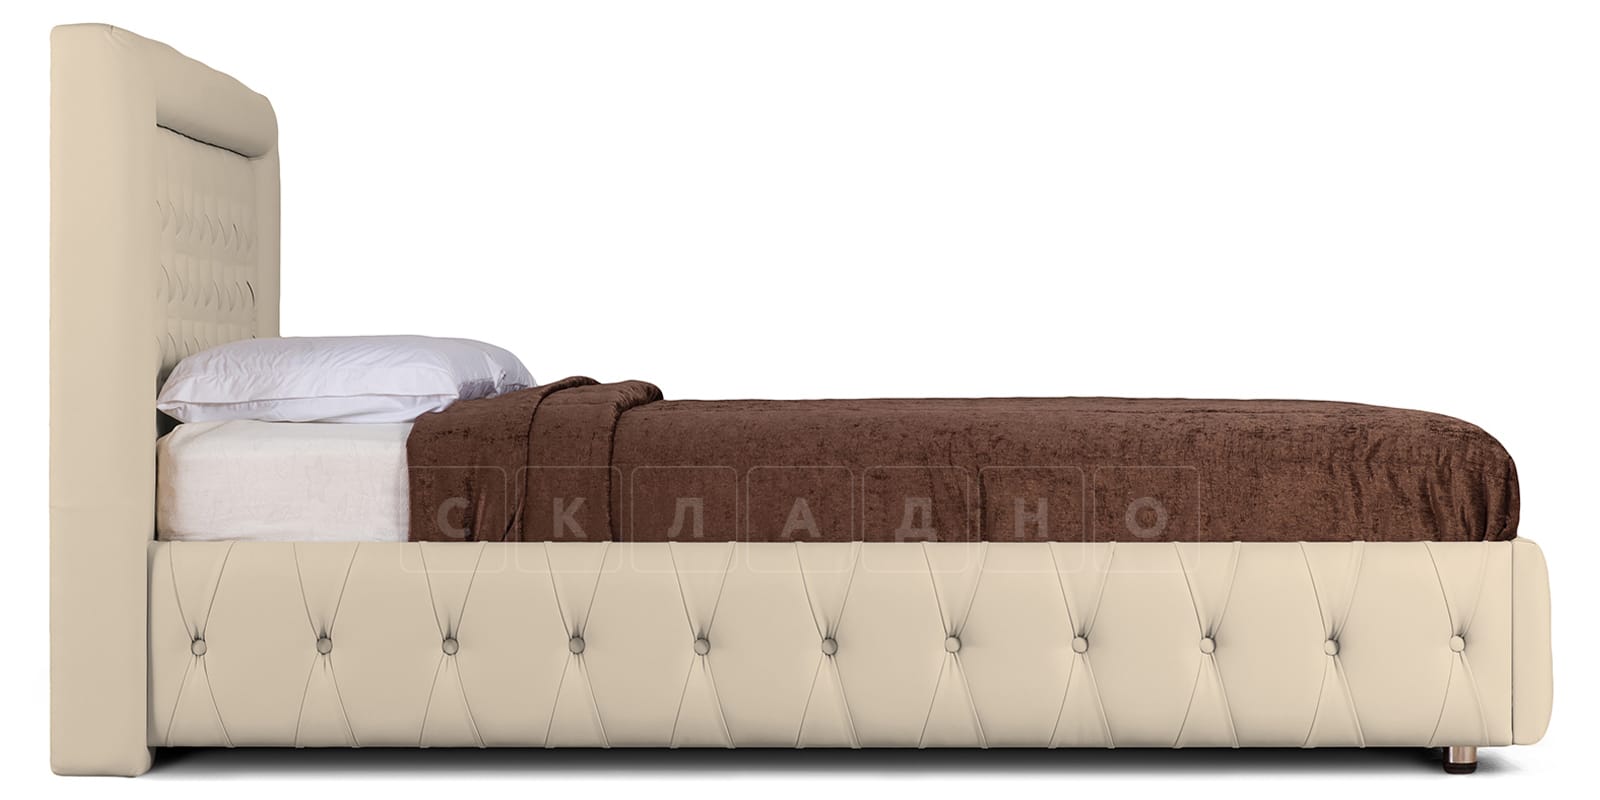 Мягкая кровать Малибу 160 см экокожа бежевый вариант 7 фото 3 | интернет-магазин Складно